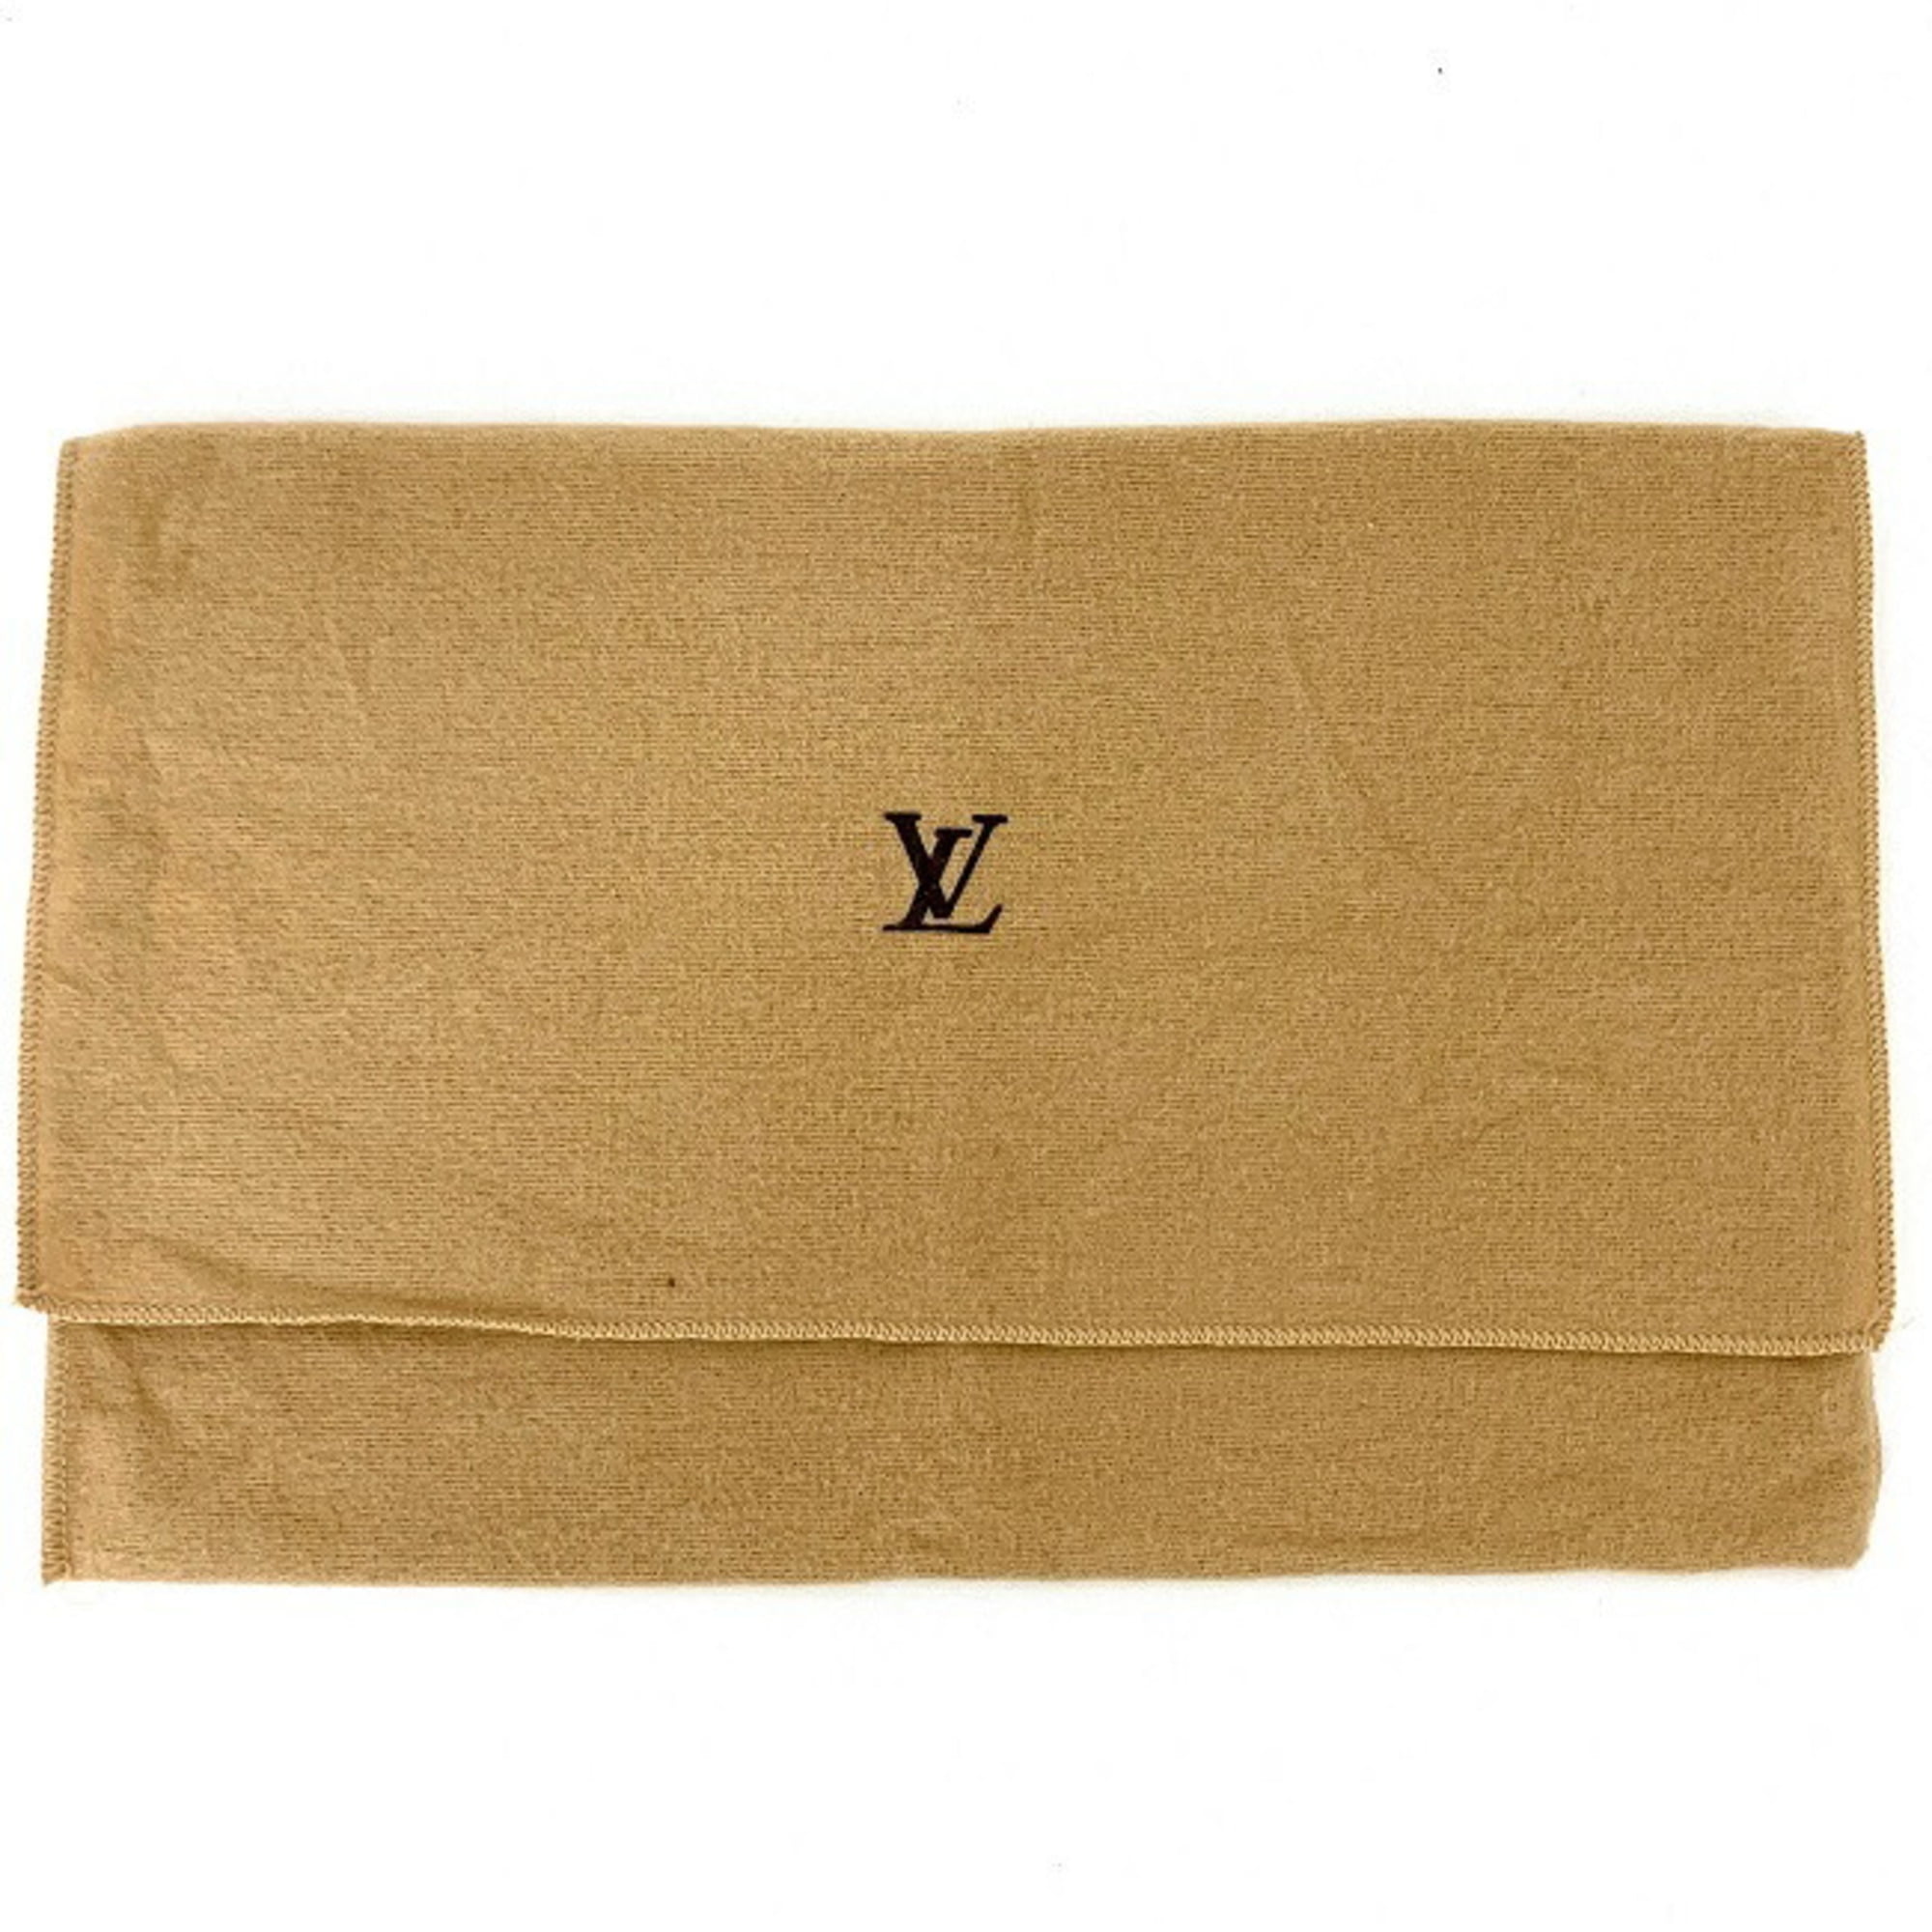 S - Louis - Waist - Vuitton - Pochette - Size - Louis Vuitton Trainer Low -  Damier - Bag - Florentine - owned Épi pouch - N51856 – Louis Vuitton 2018  pre